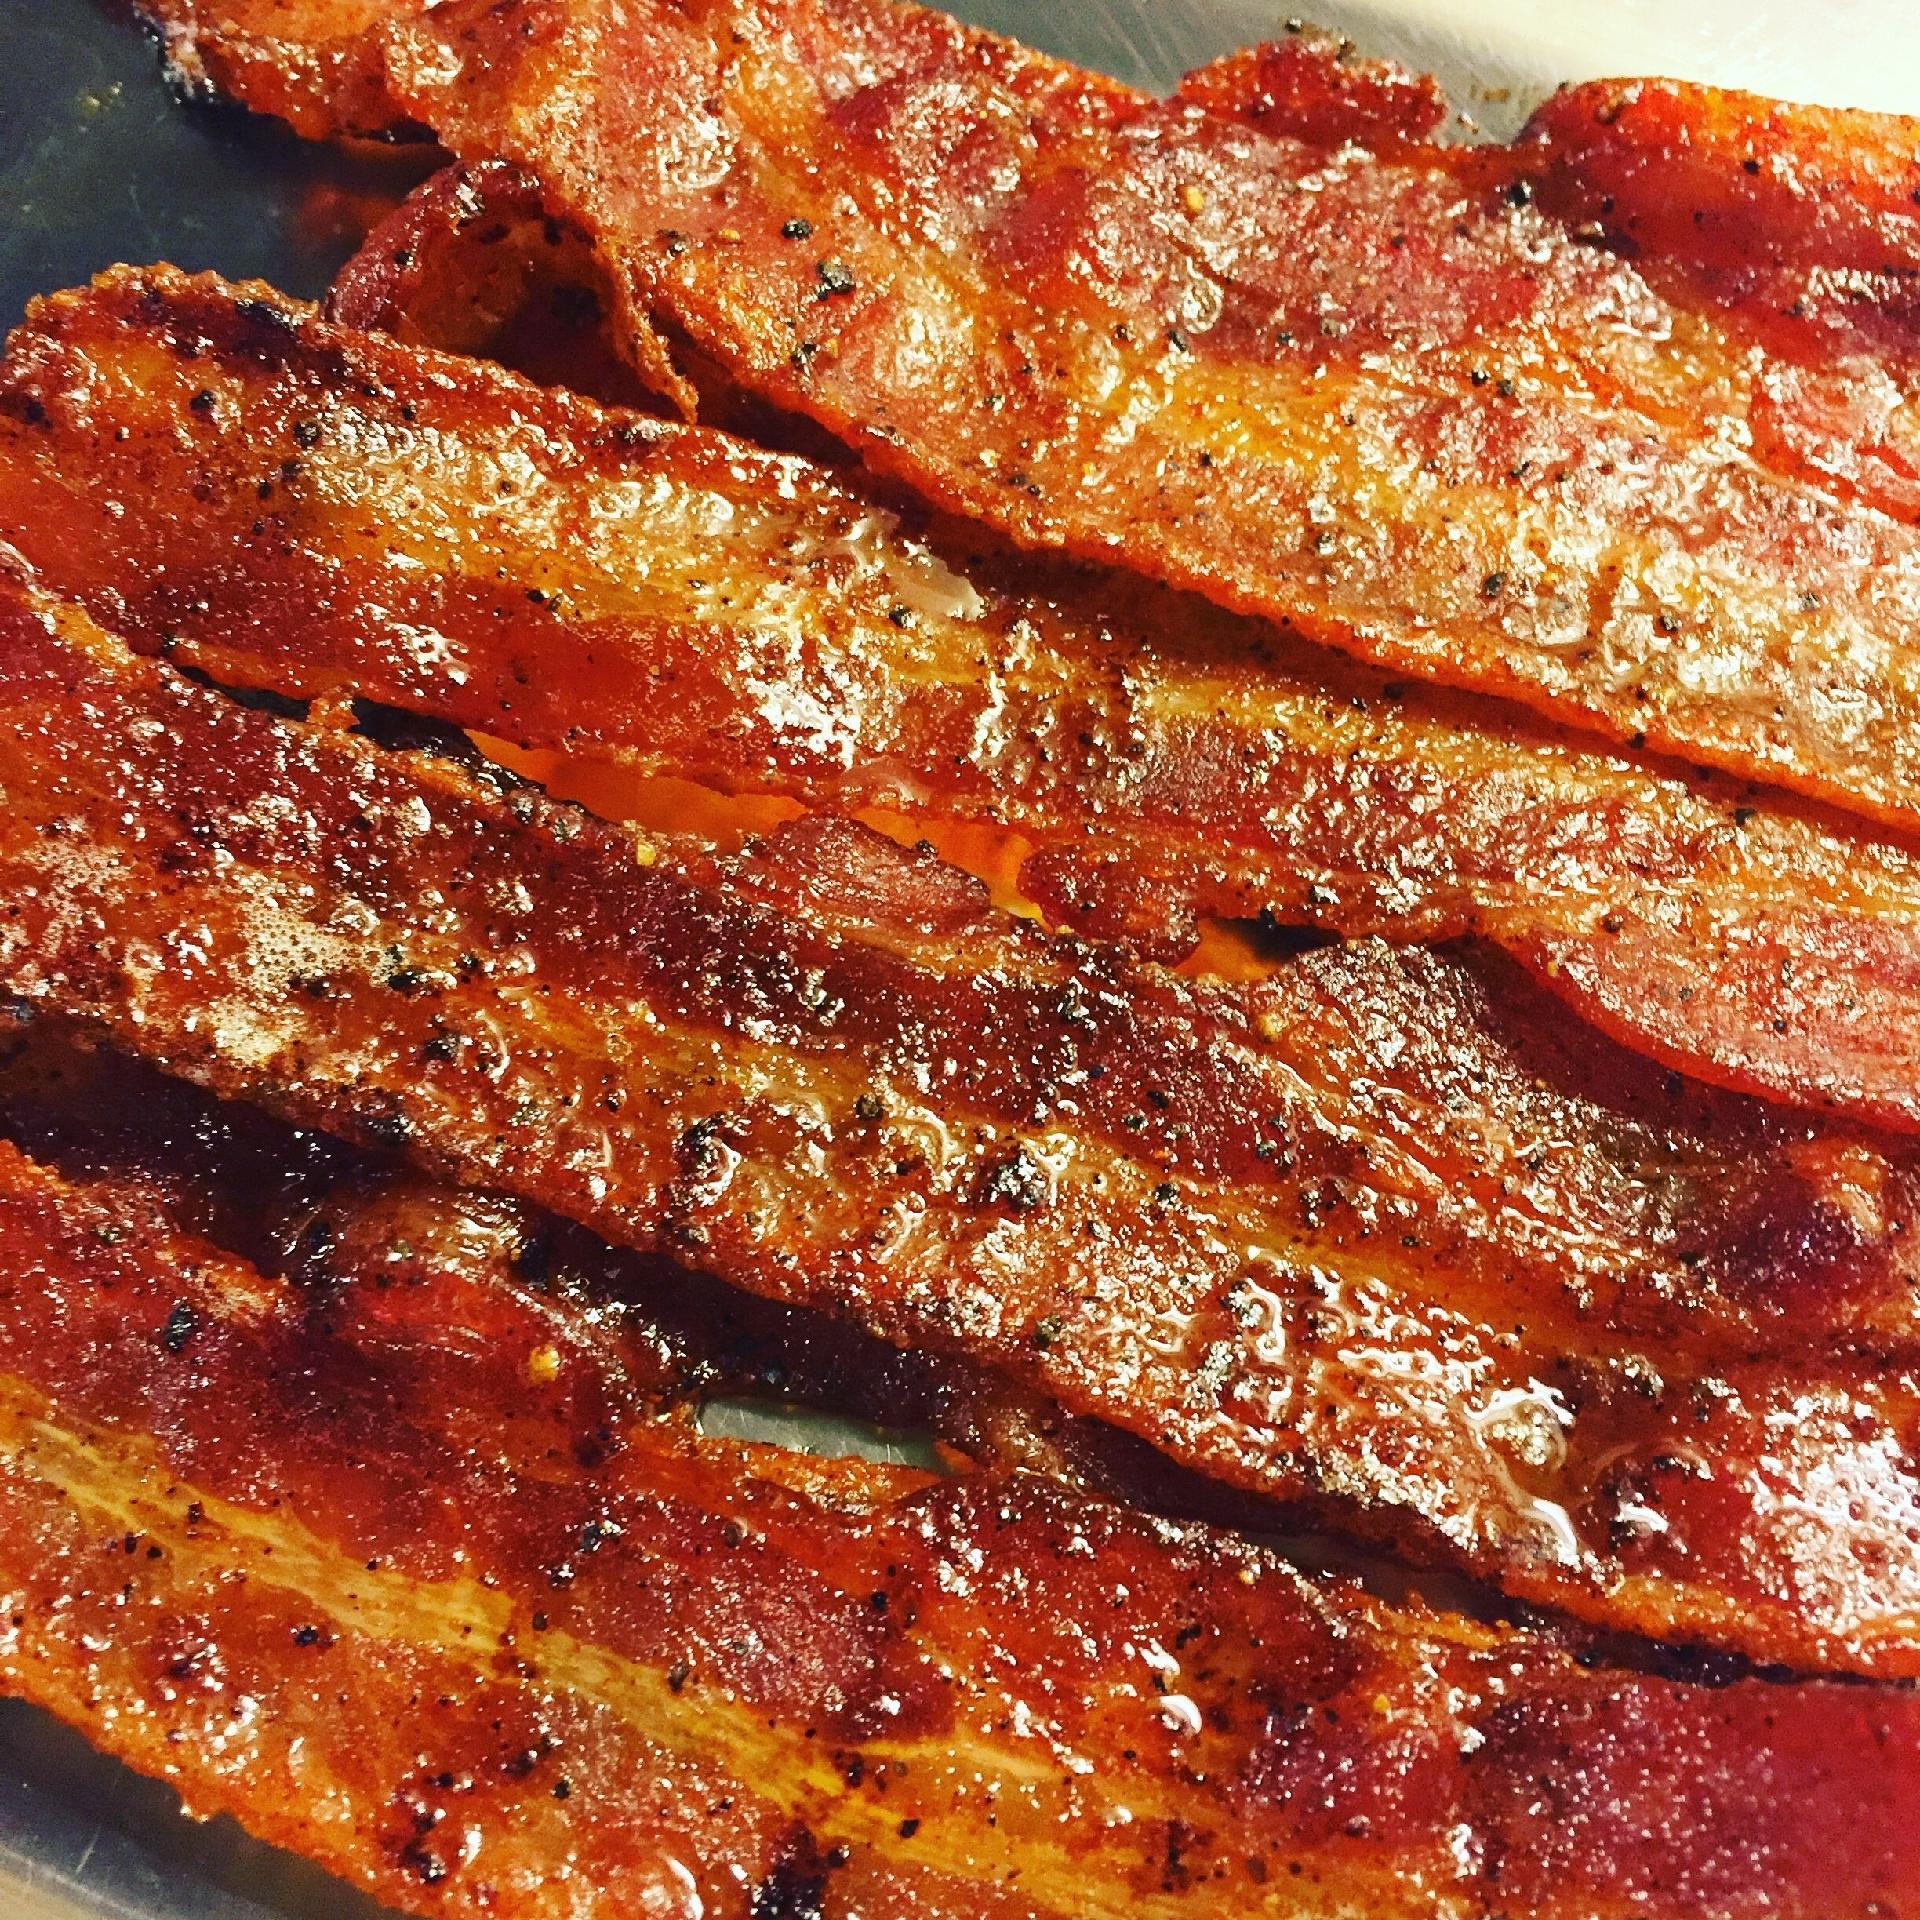 Bacon não é tão do mal assim; veja benefícios das gorduras para